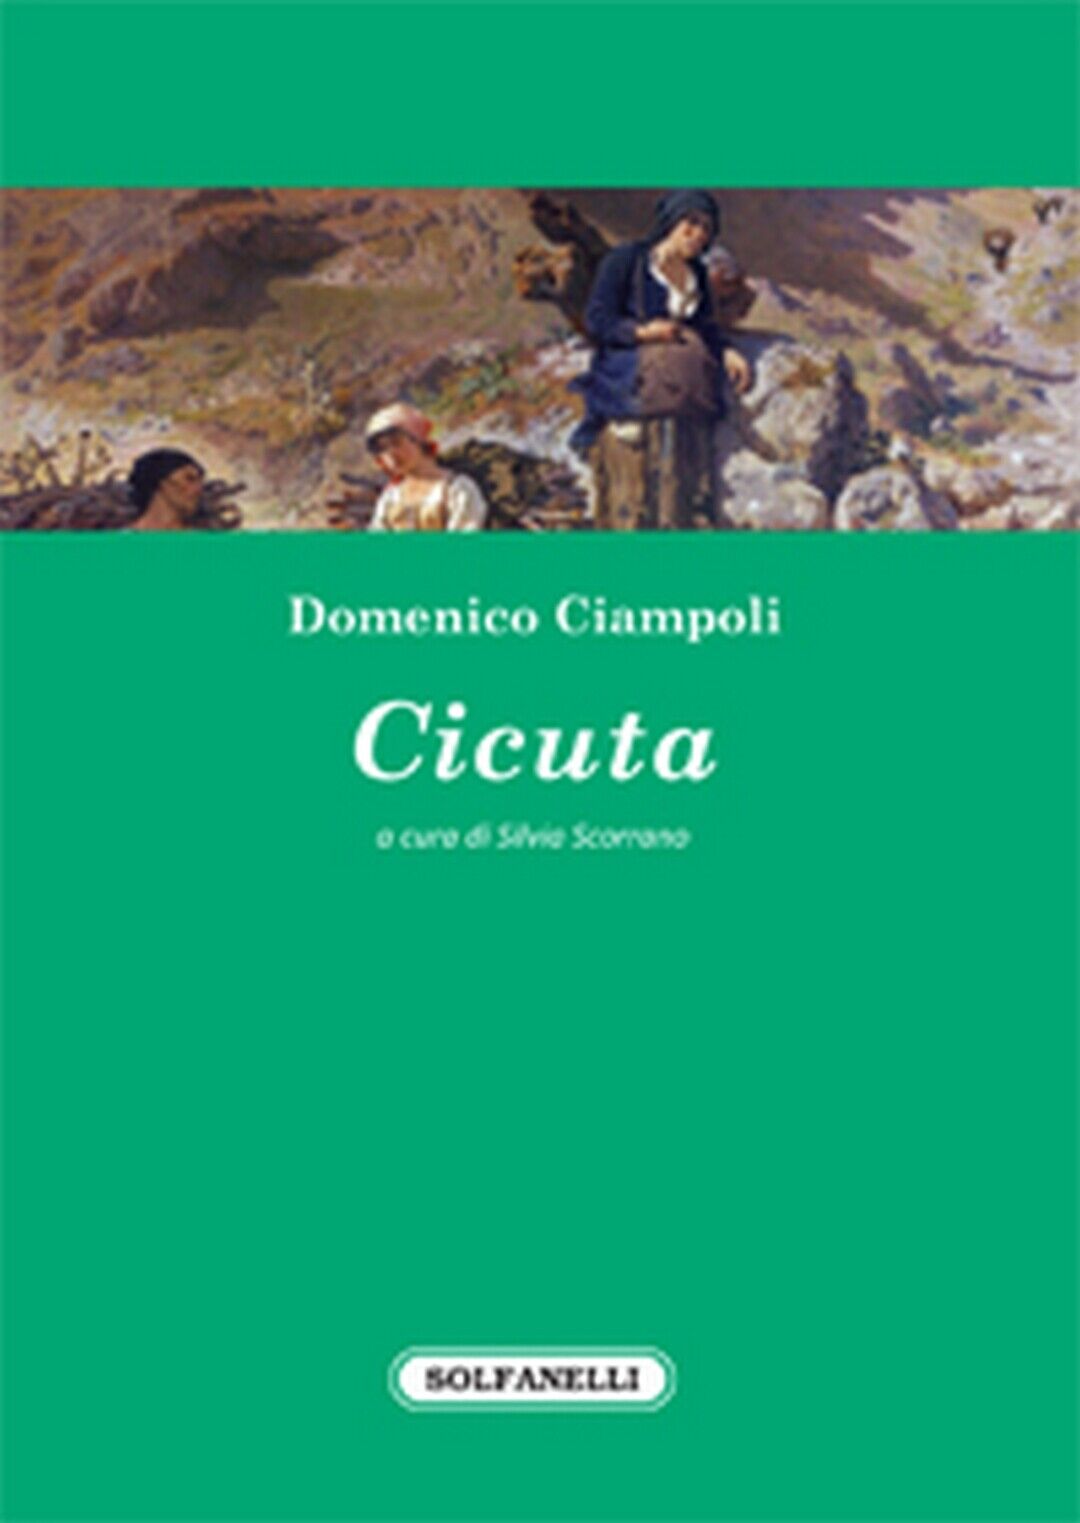 CICUTA  di Domenico Ciampoli,  Solfanelli Edizioni